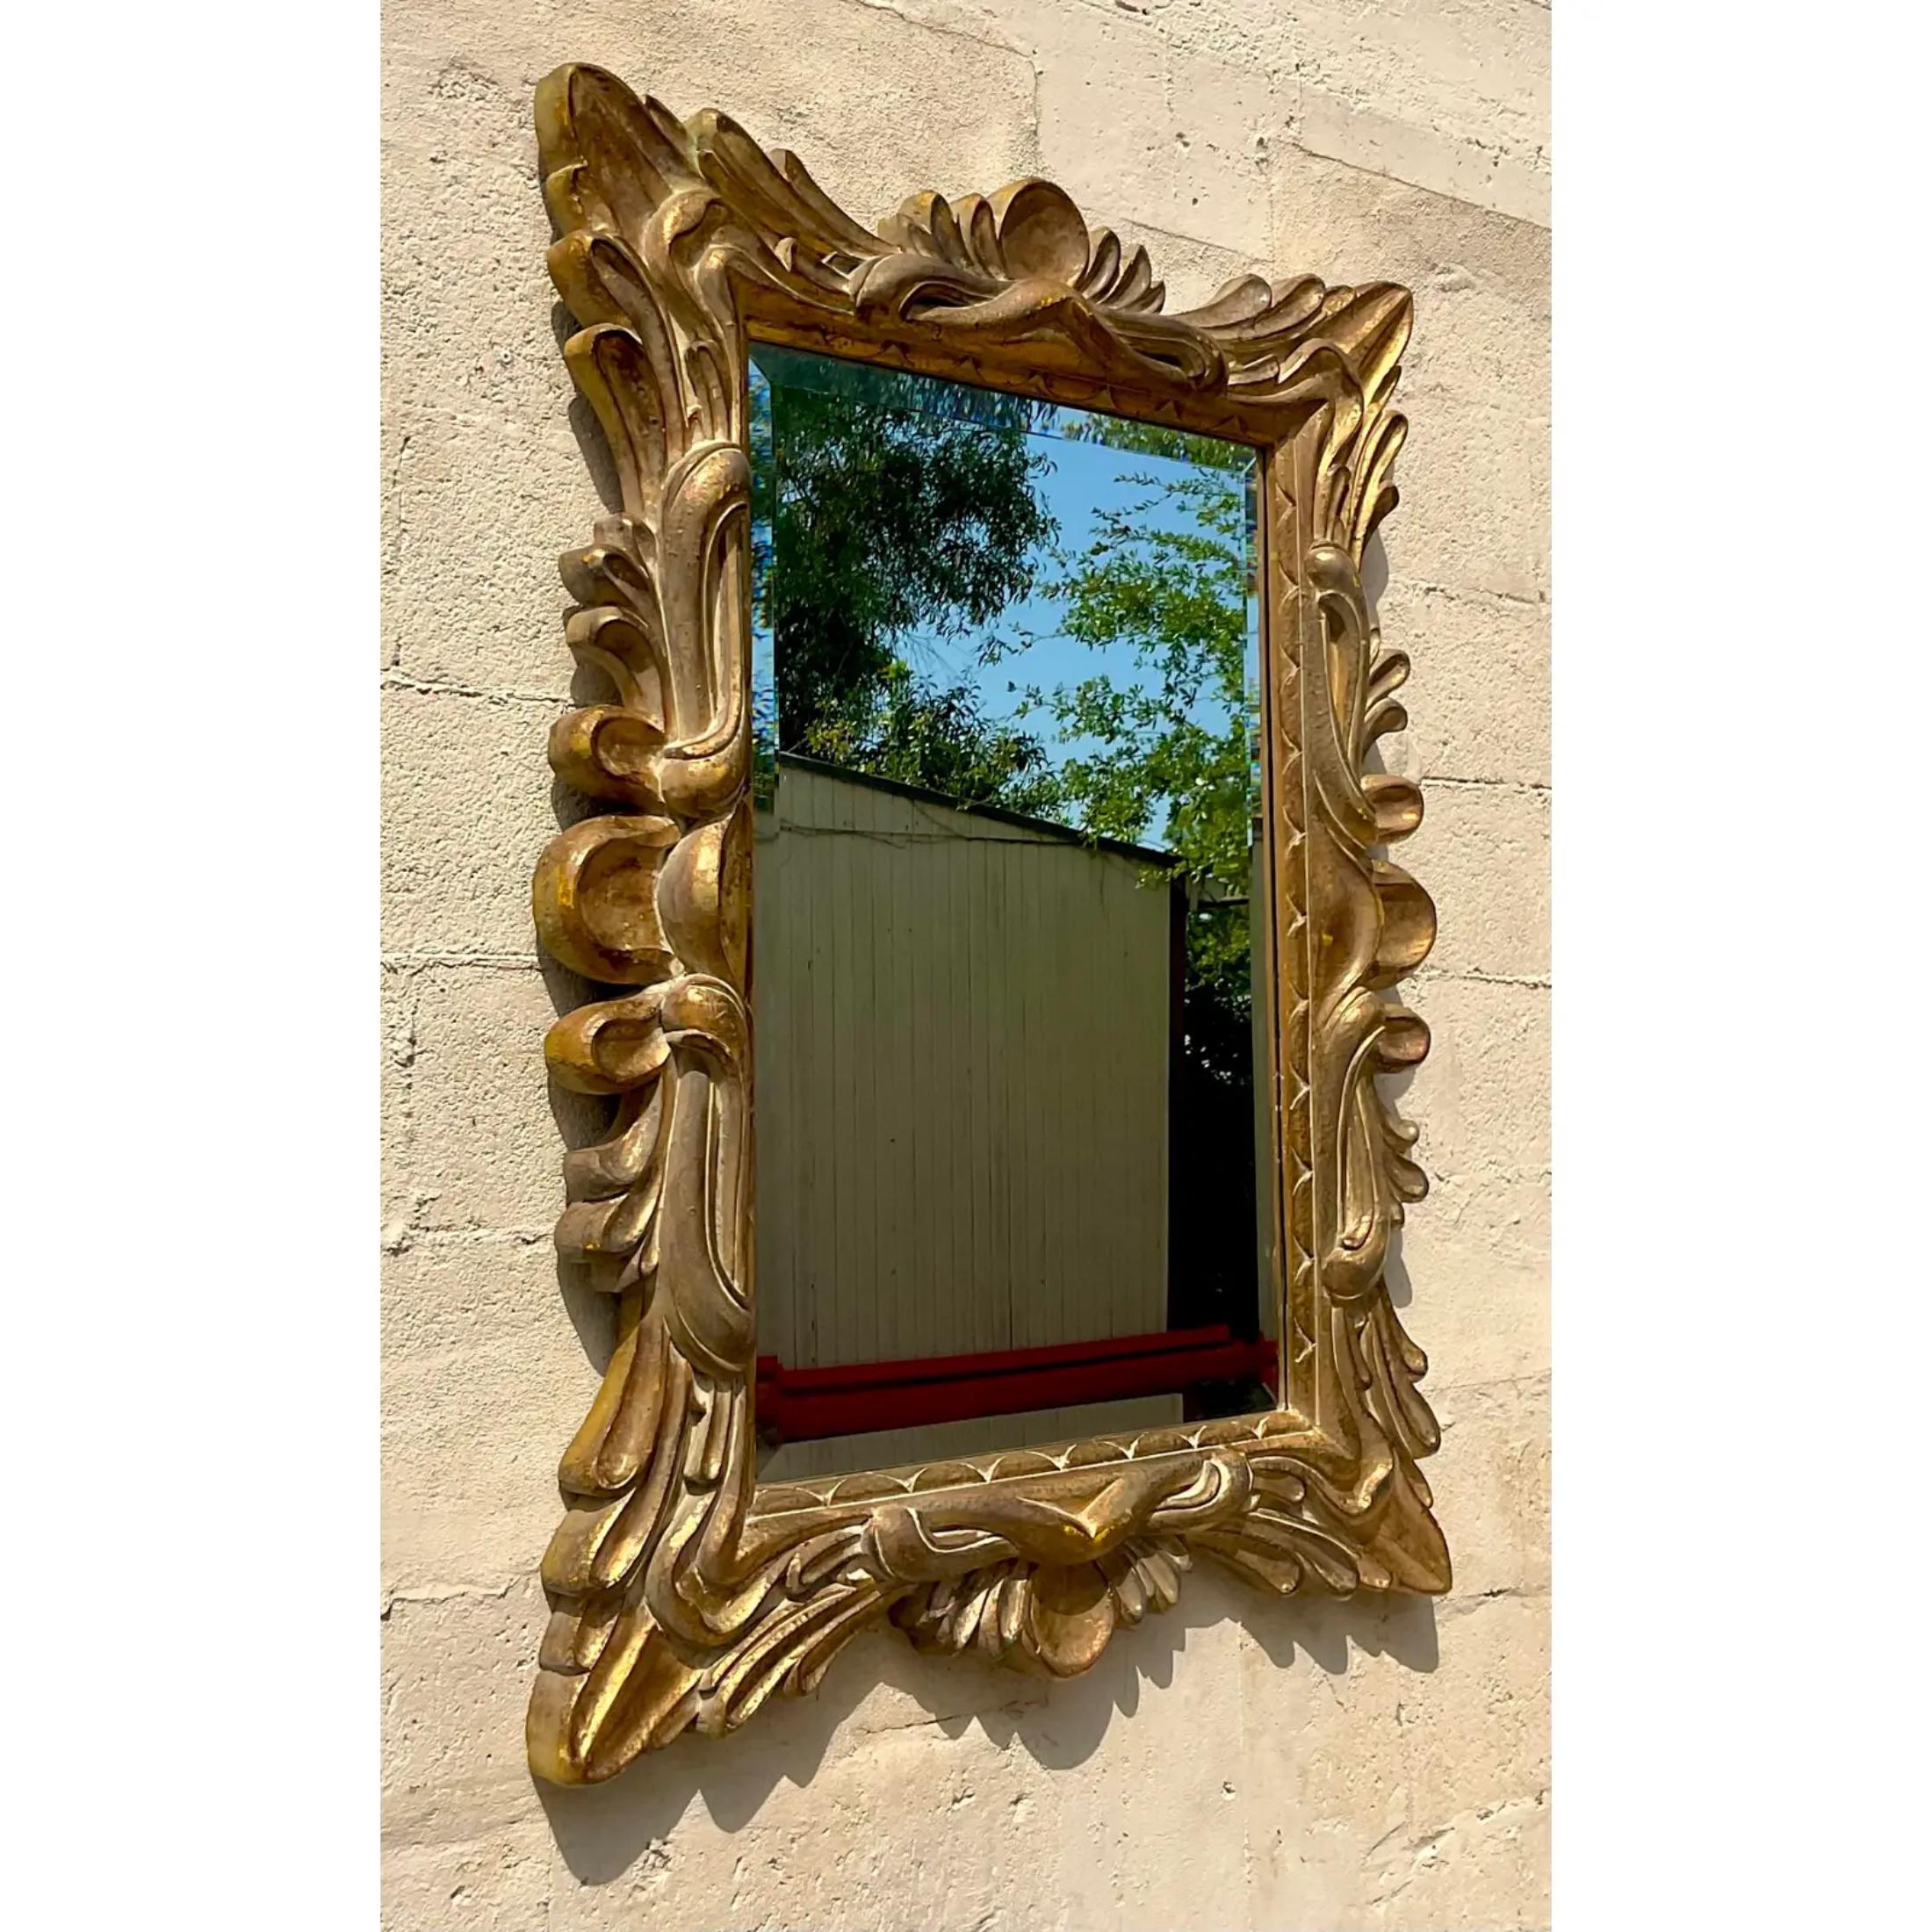 Eine fantastische Vintage Regency vergoldeten Spiegel. Ein schickes, geformtes Verbundmaterial, das mit leuchtendem Gold überzogen ist. Ein wunderschönes Design mit viel Schnörkel. Zwei Spiegel sind auf meiner Chairish-Seite erhältlich, falls ein